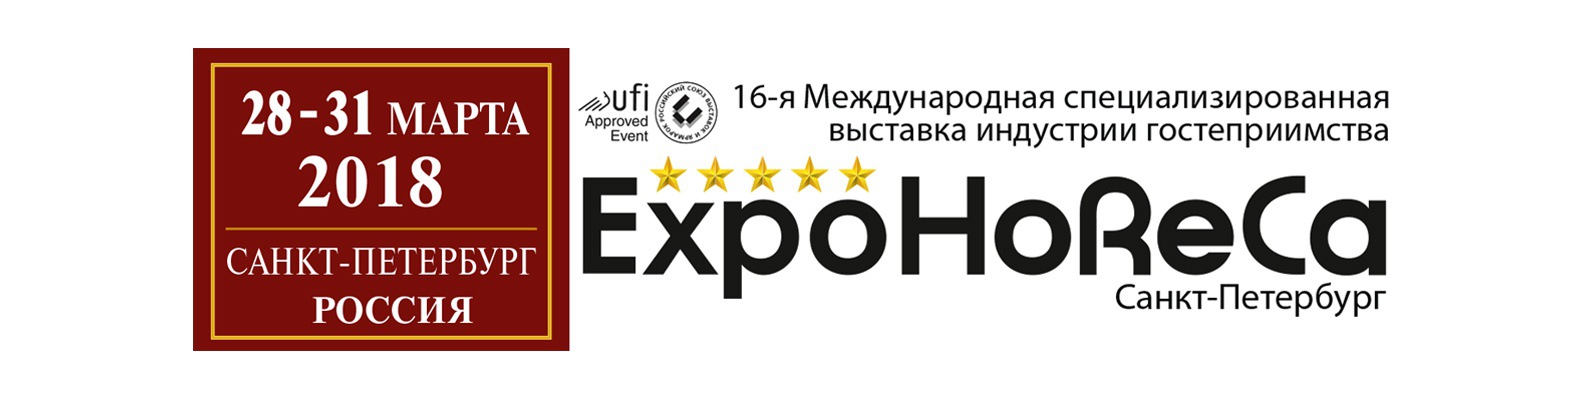 С 28 по 31 марта 2018 в Санкт-Петербурге состоится Международная выставка индустрии гостеприимства ExpoHoReCa.